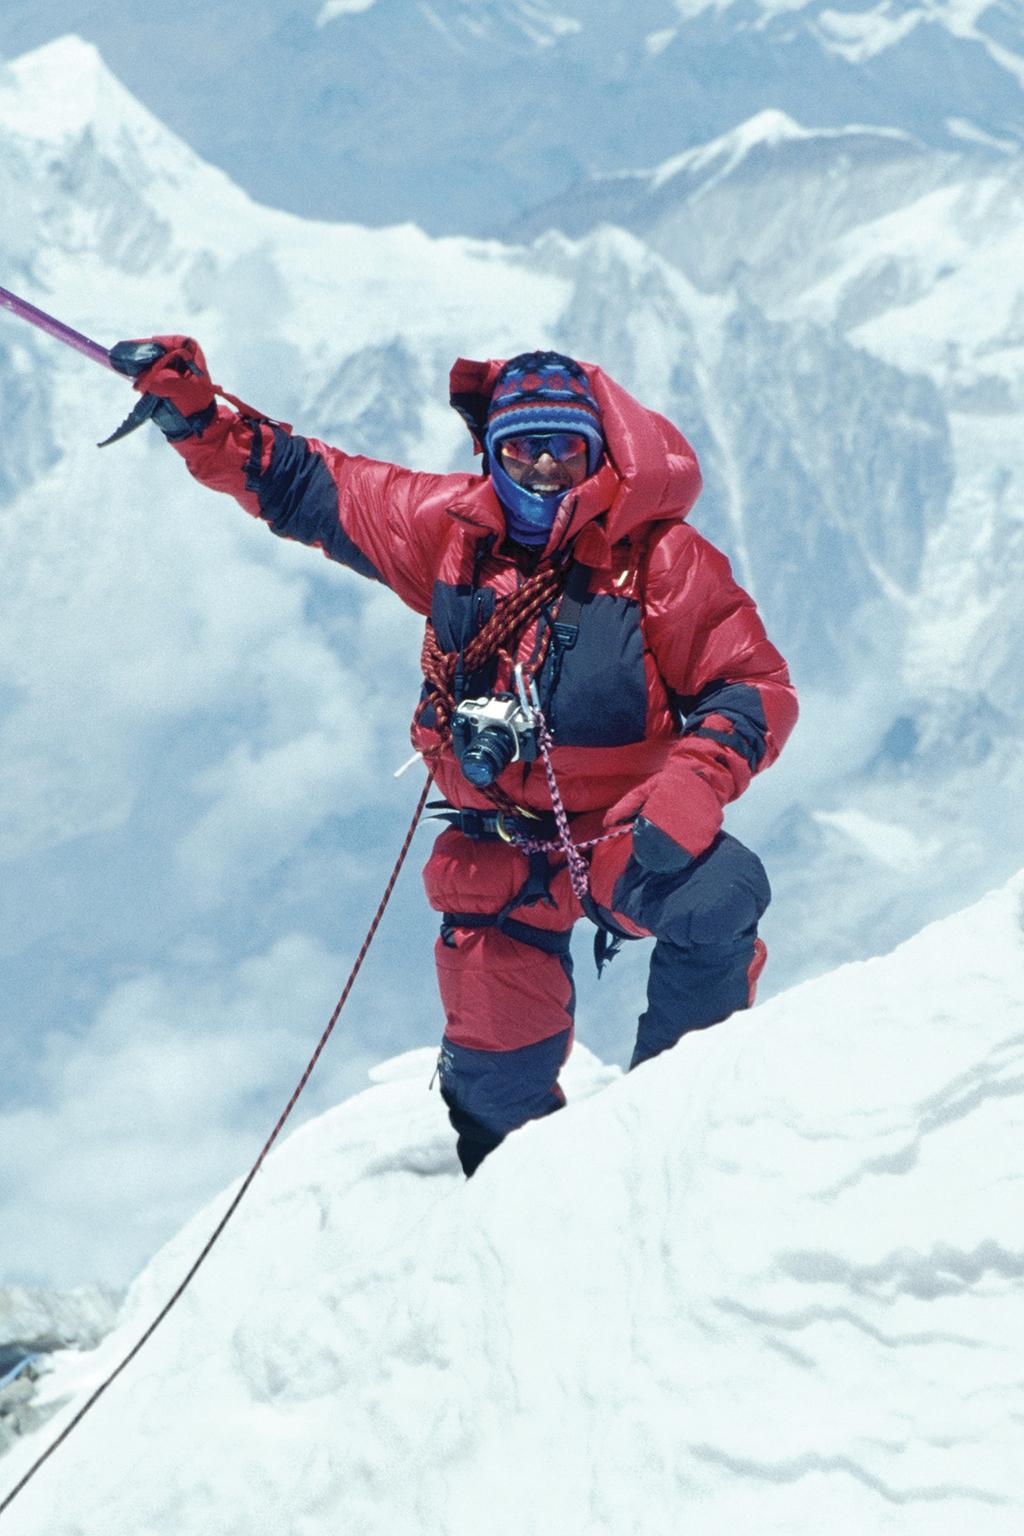 Ed Viesturs 14 X 8000 Ed Viesturs é o maior alpinista de alta montanha dos EUA e já escalou vários dos picos mais desafiadores do mundo, tendo participado de sete ascensões do Monte Everest.